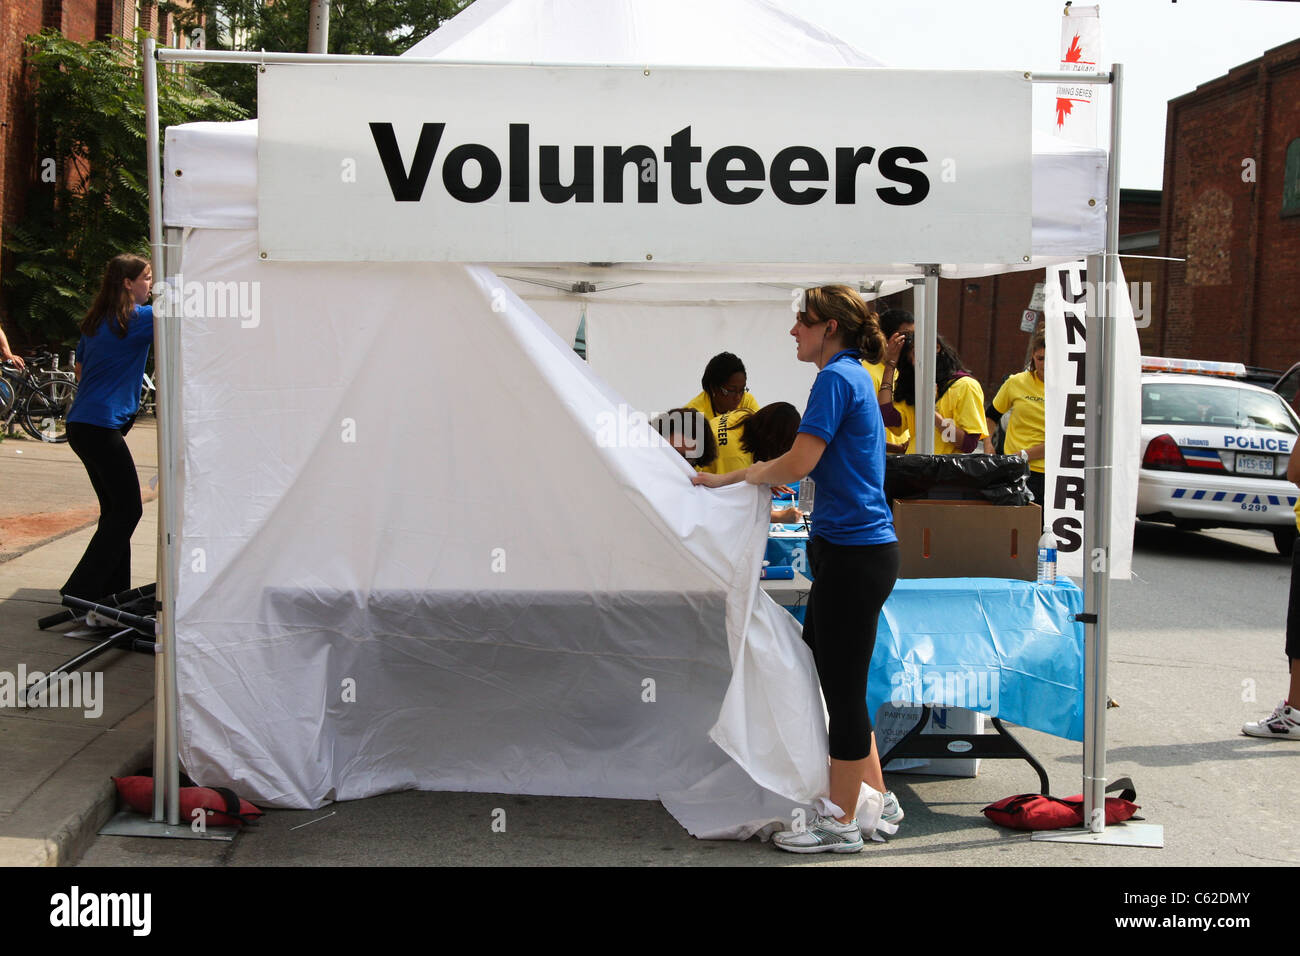 volunteers volunteer tent Stock Photo